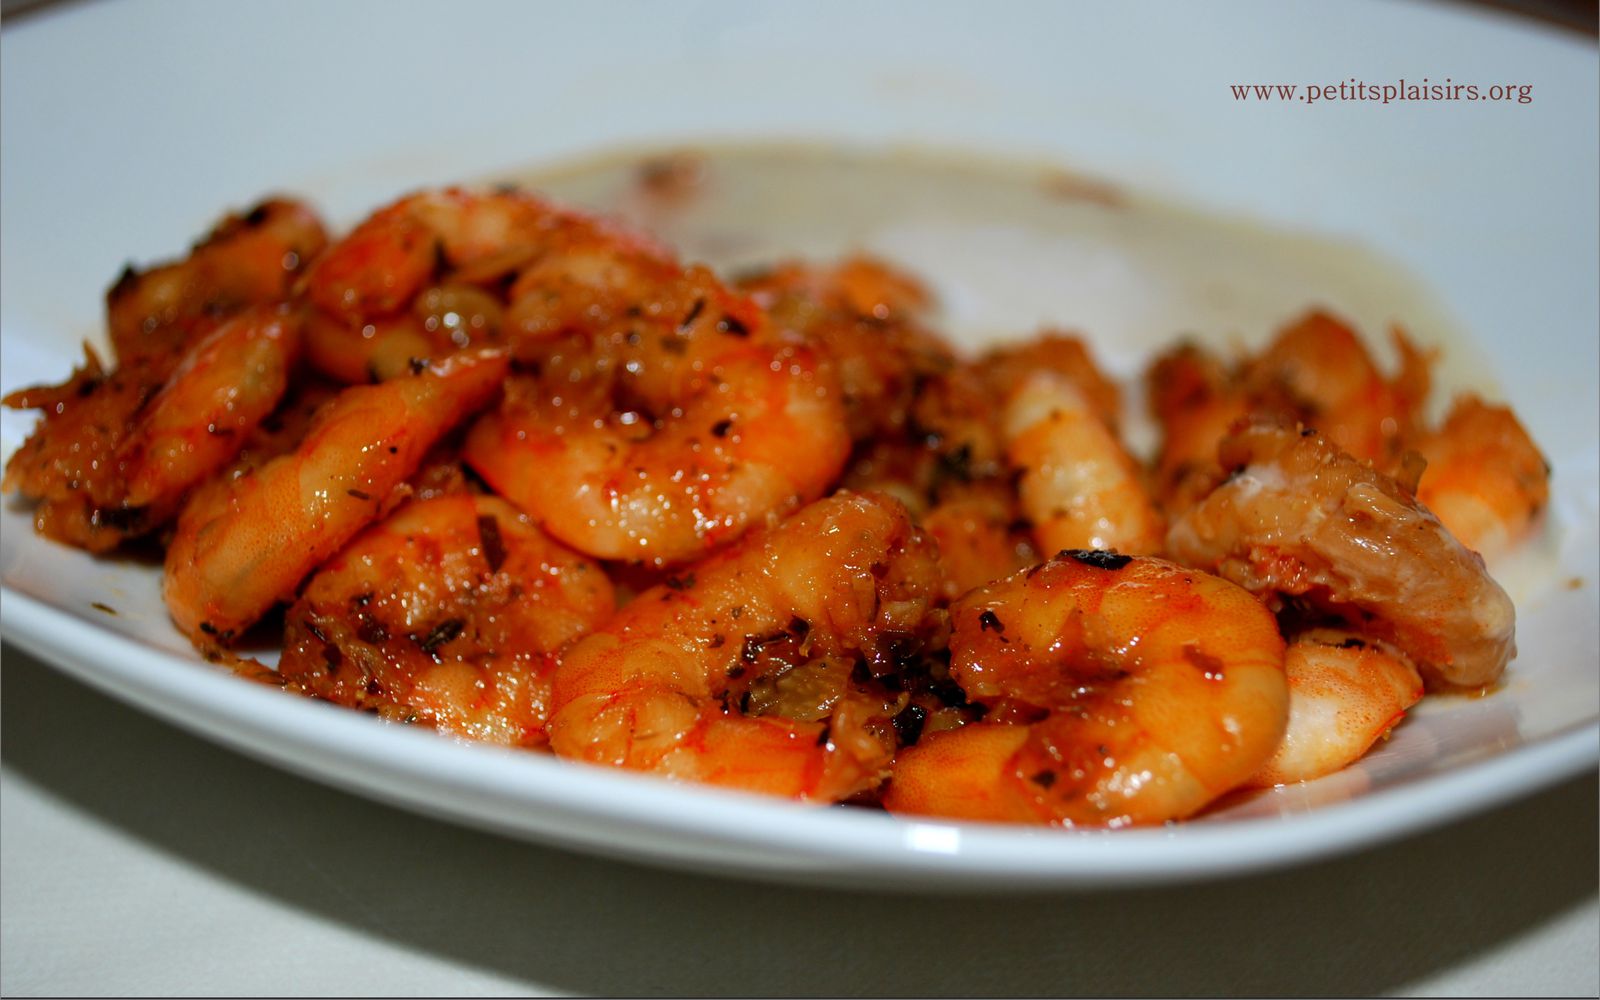 Crevettes marinée à la sauce soja au barbecue -  http://www.petitsplaisirs.org/